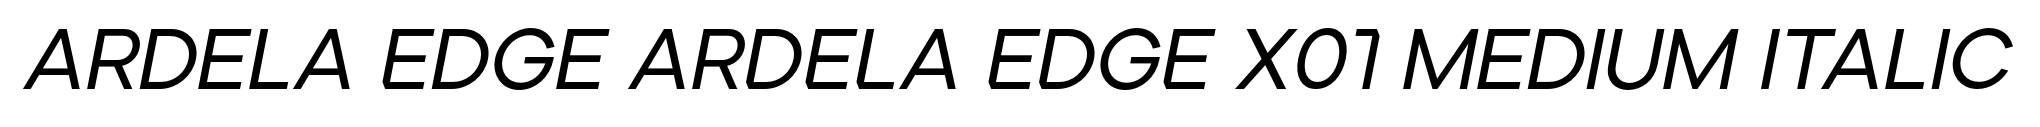 Ardela Edge ARDELA EDGE X01 Medium Italic image